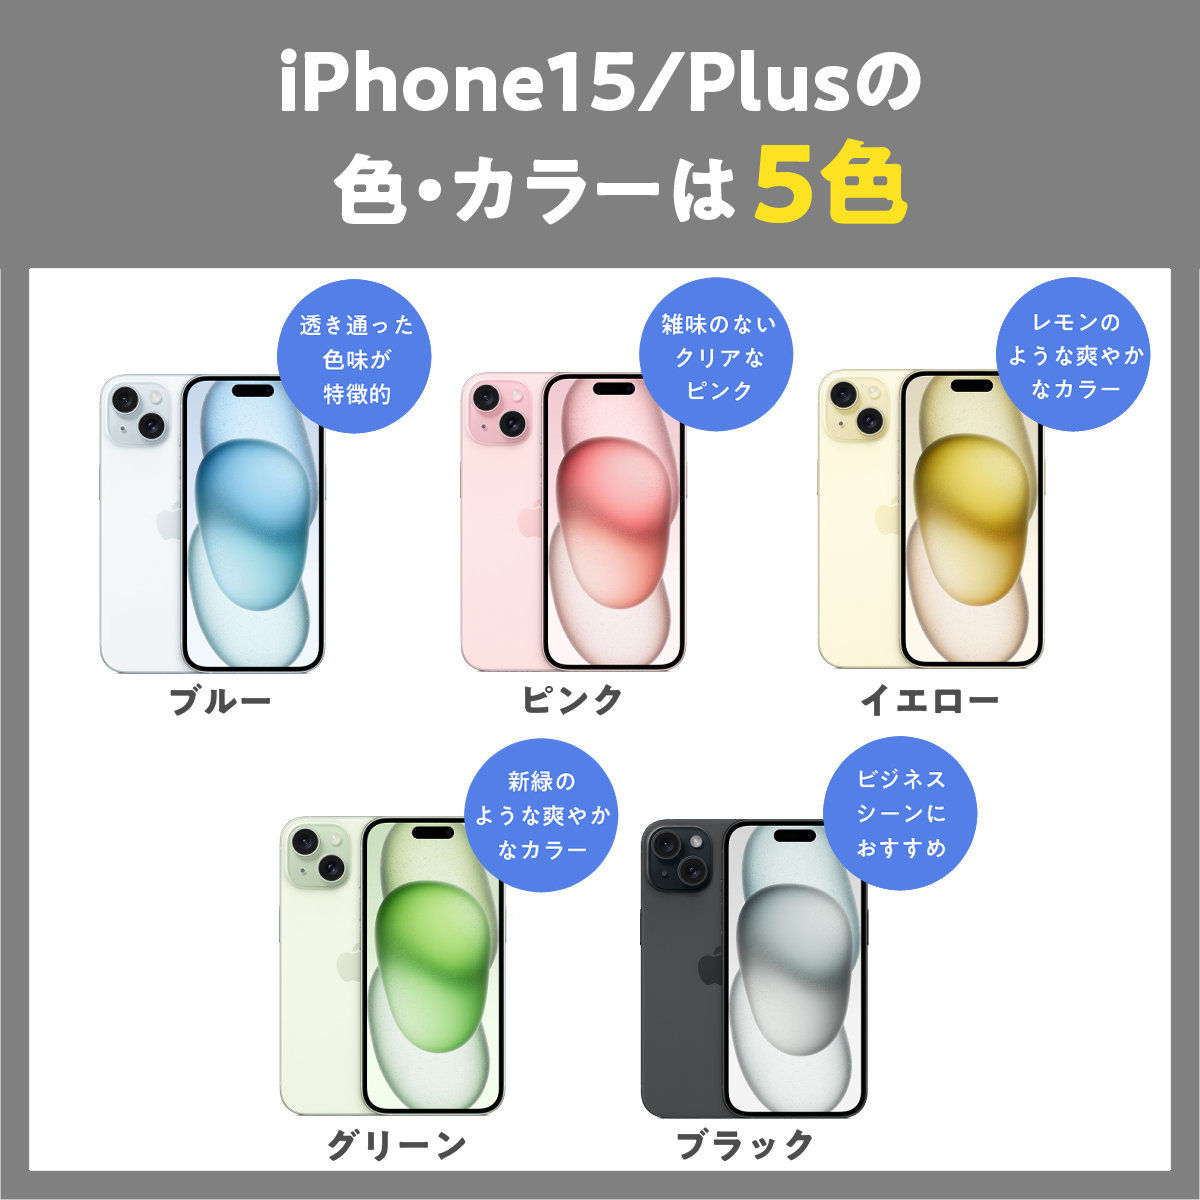 iPhone15/15 Plusのカラー